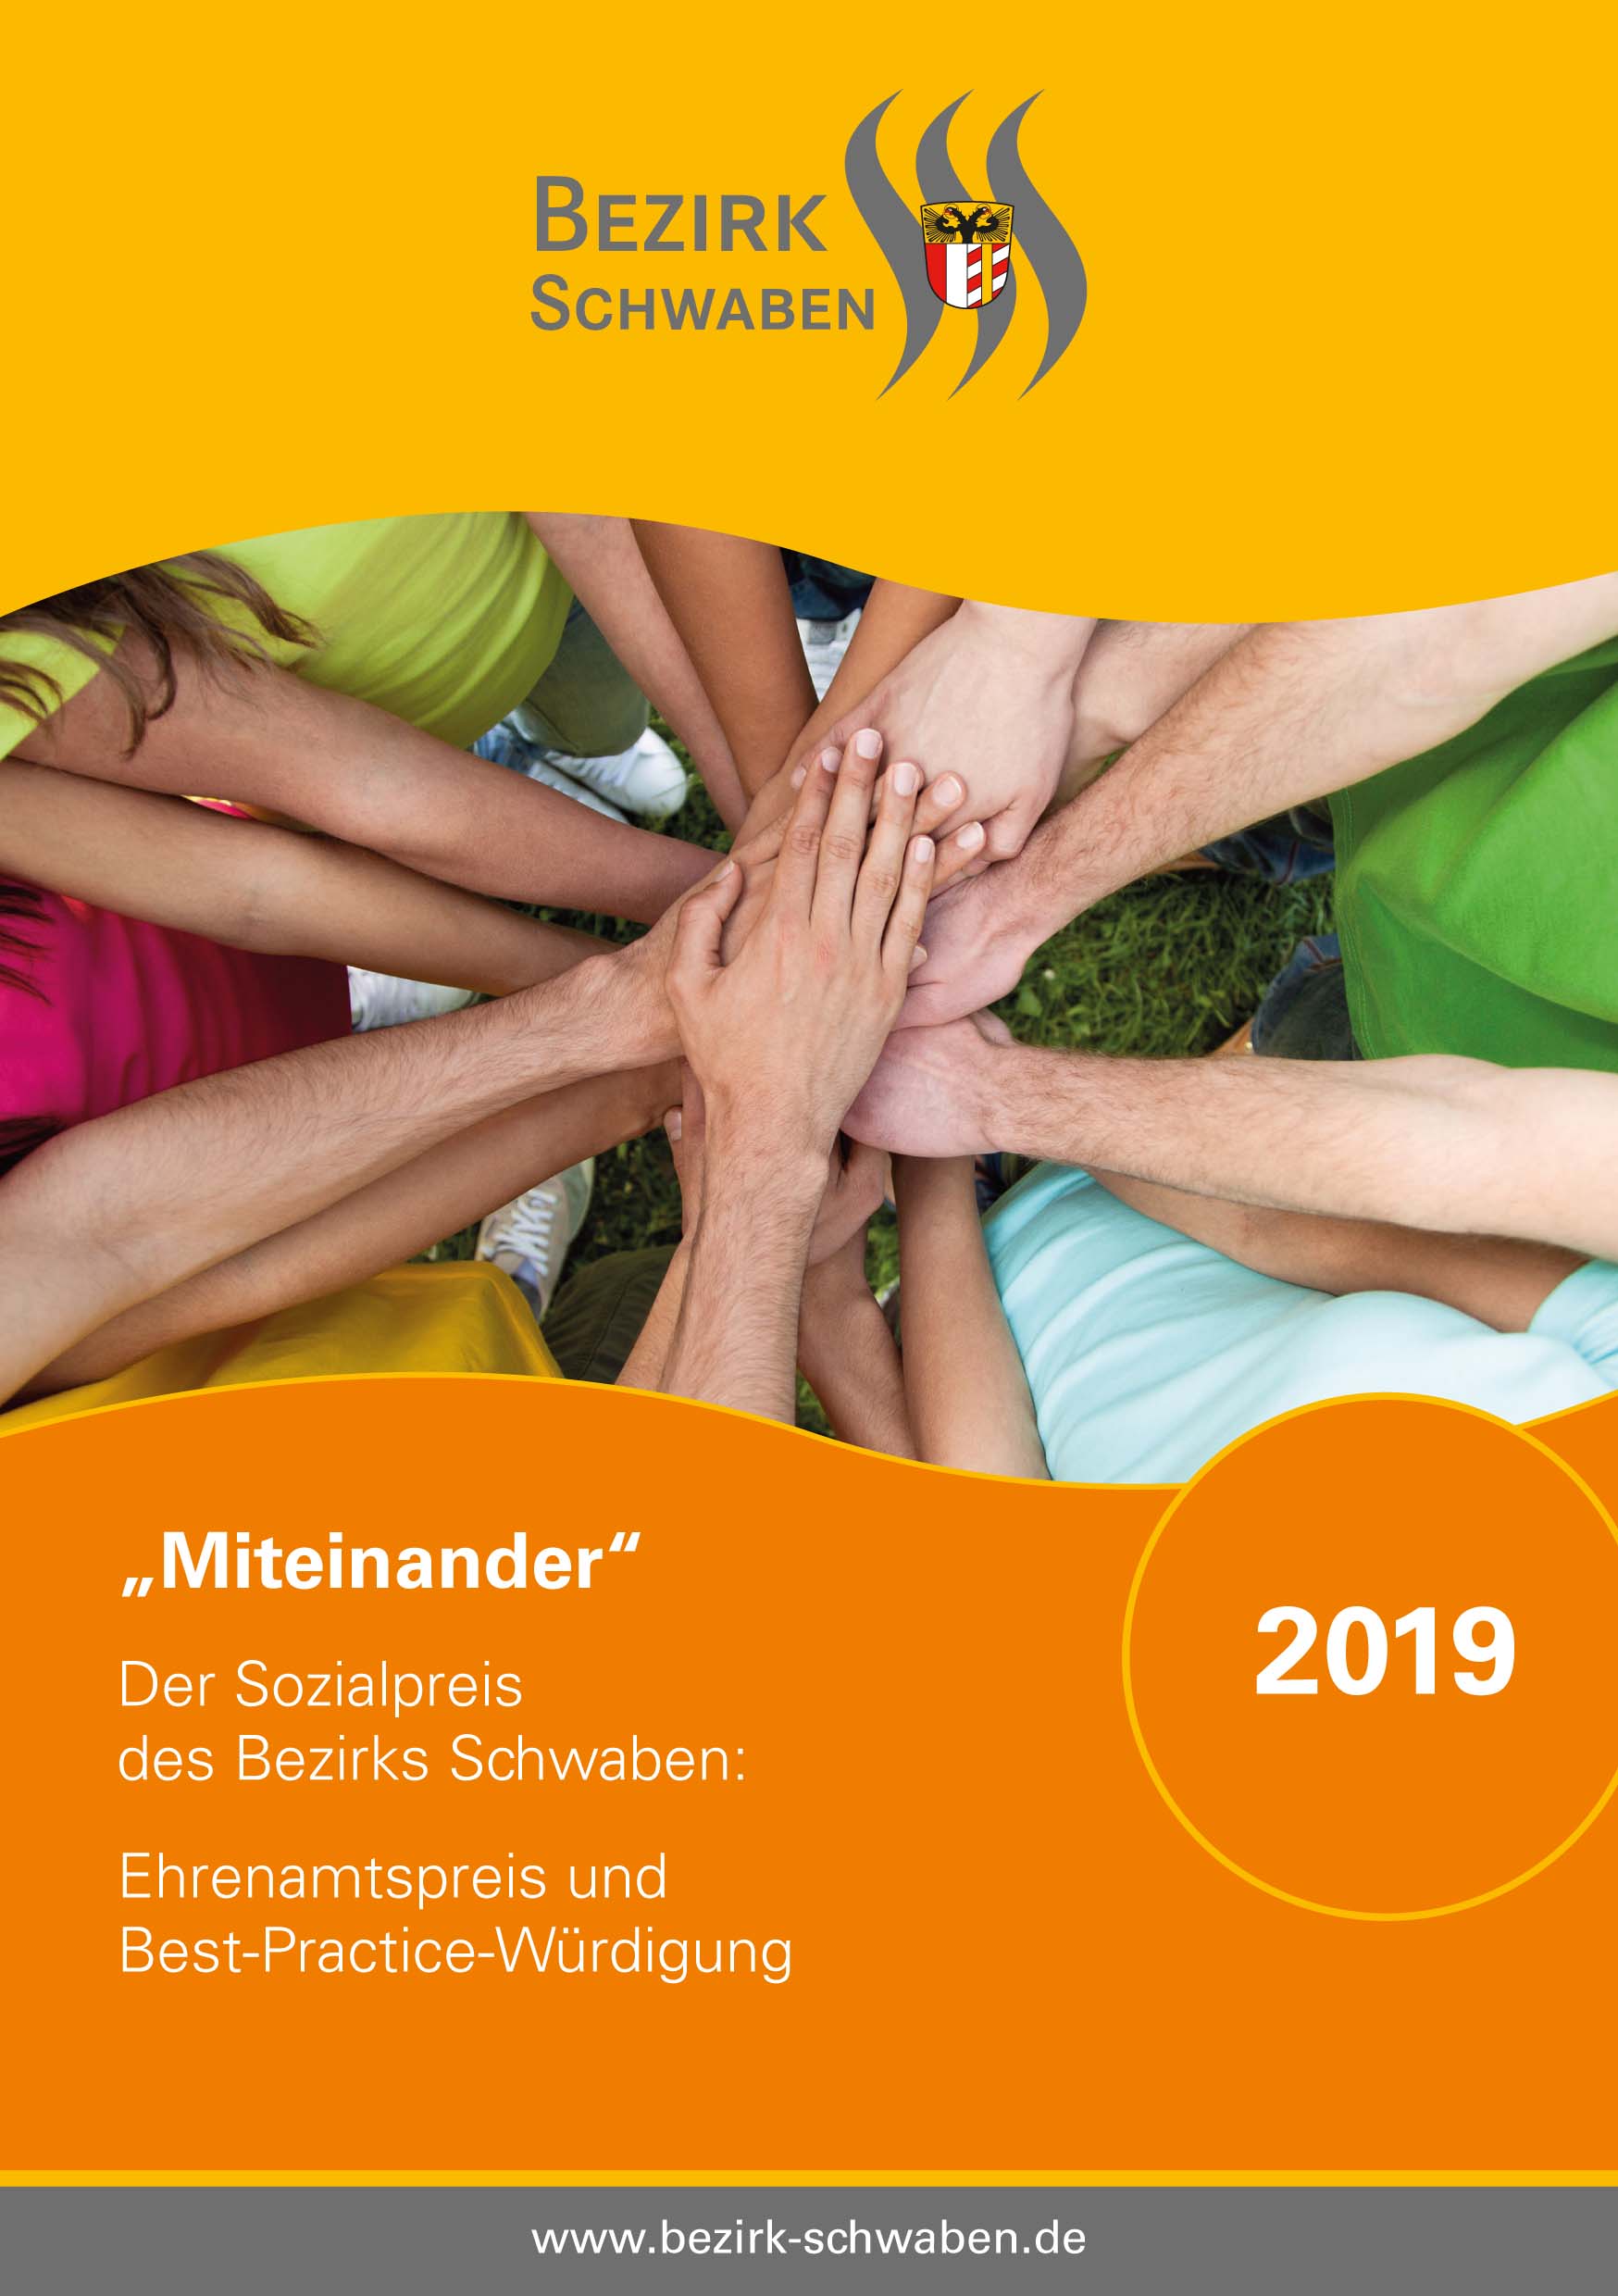 Jetzt bewerben: Der Bezirk Schwaben vergibt 2019 einen Preis für soziales Engagement